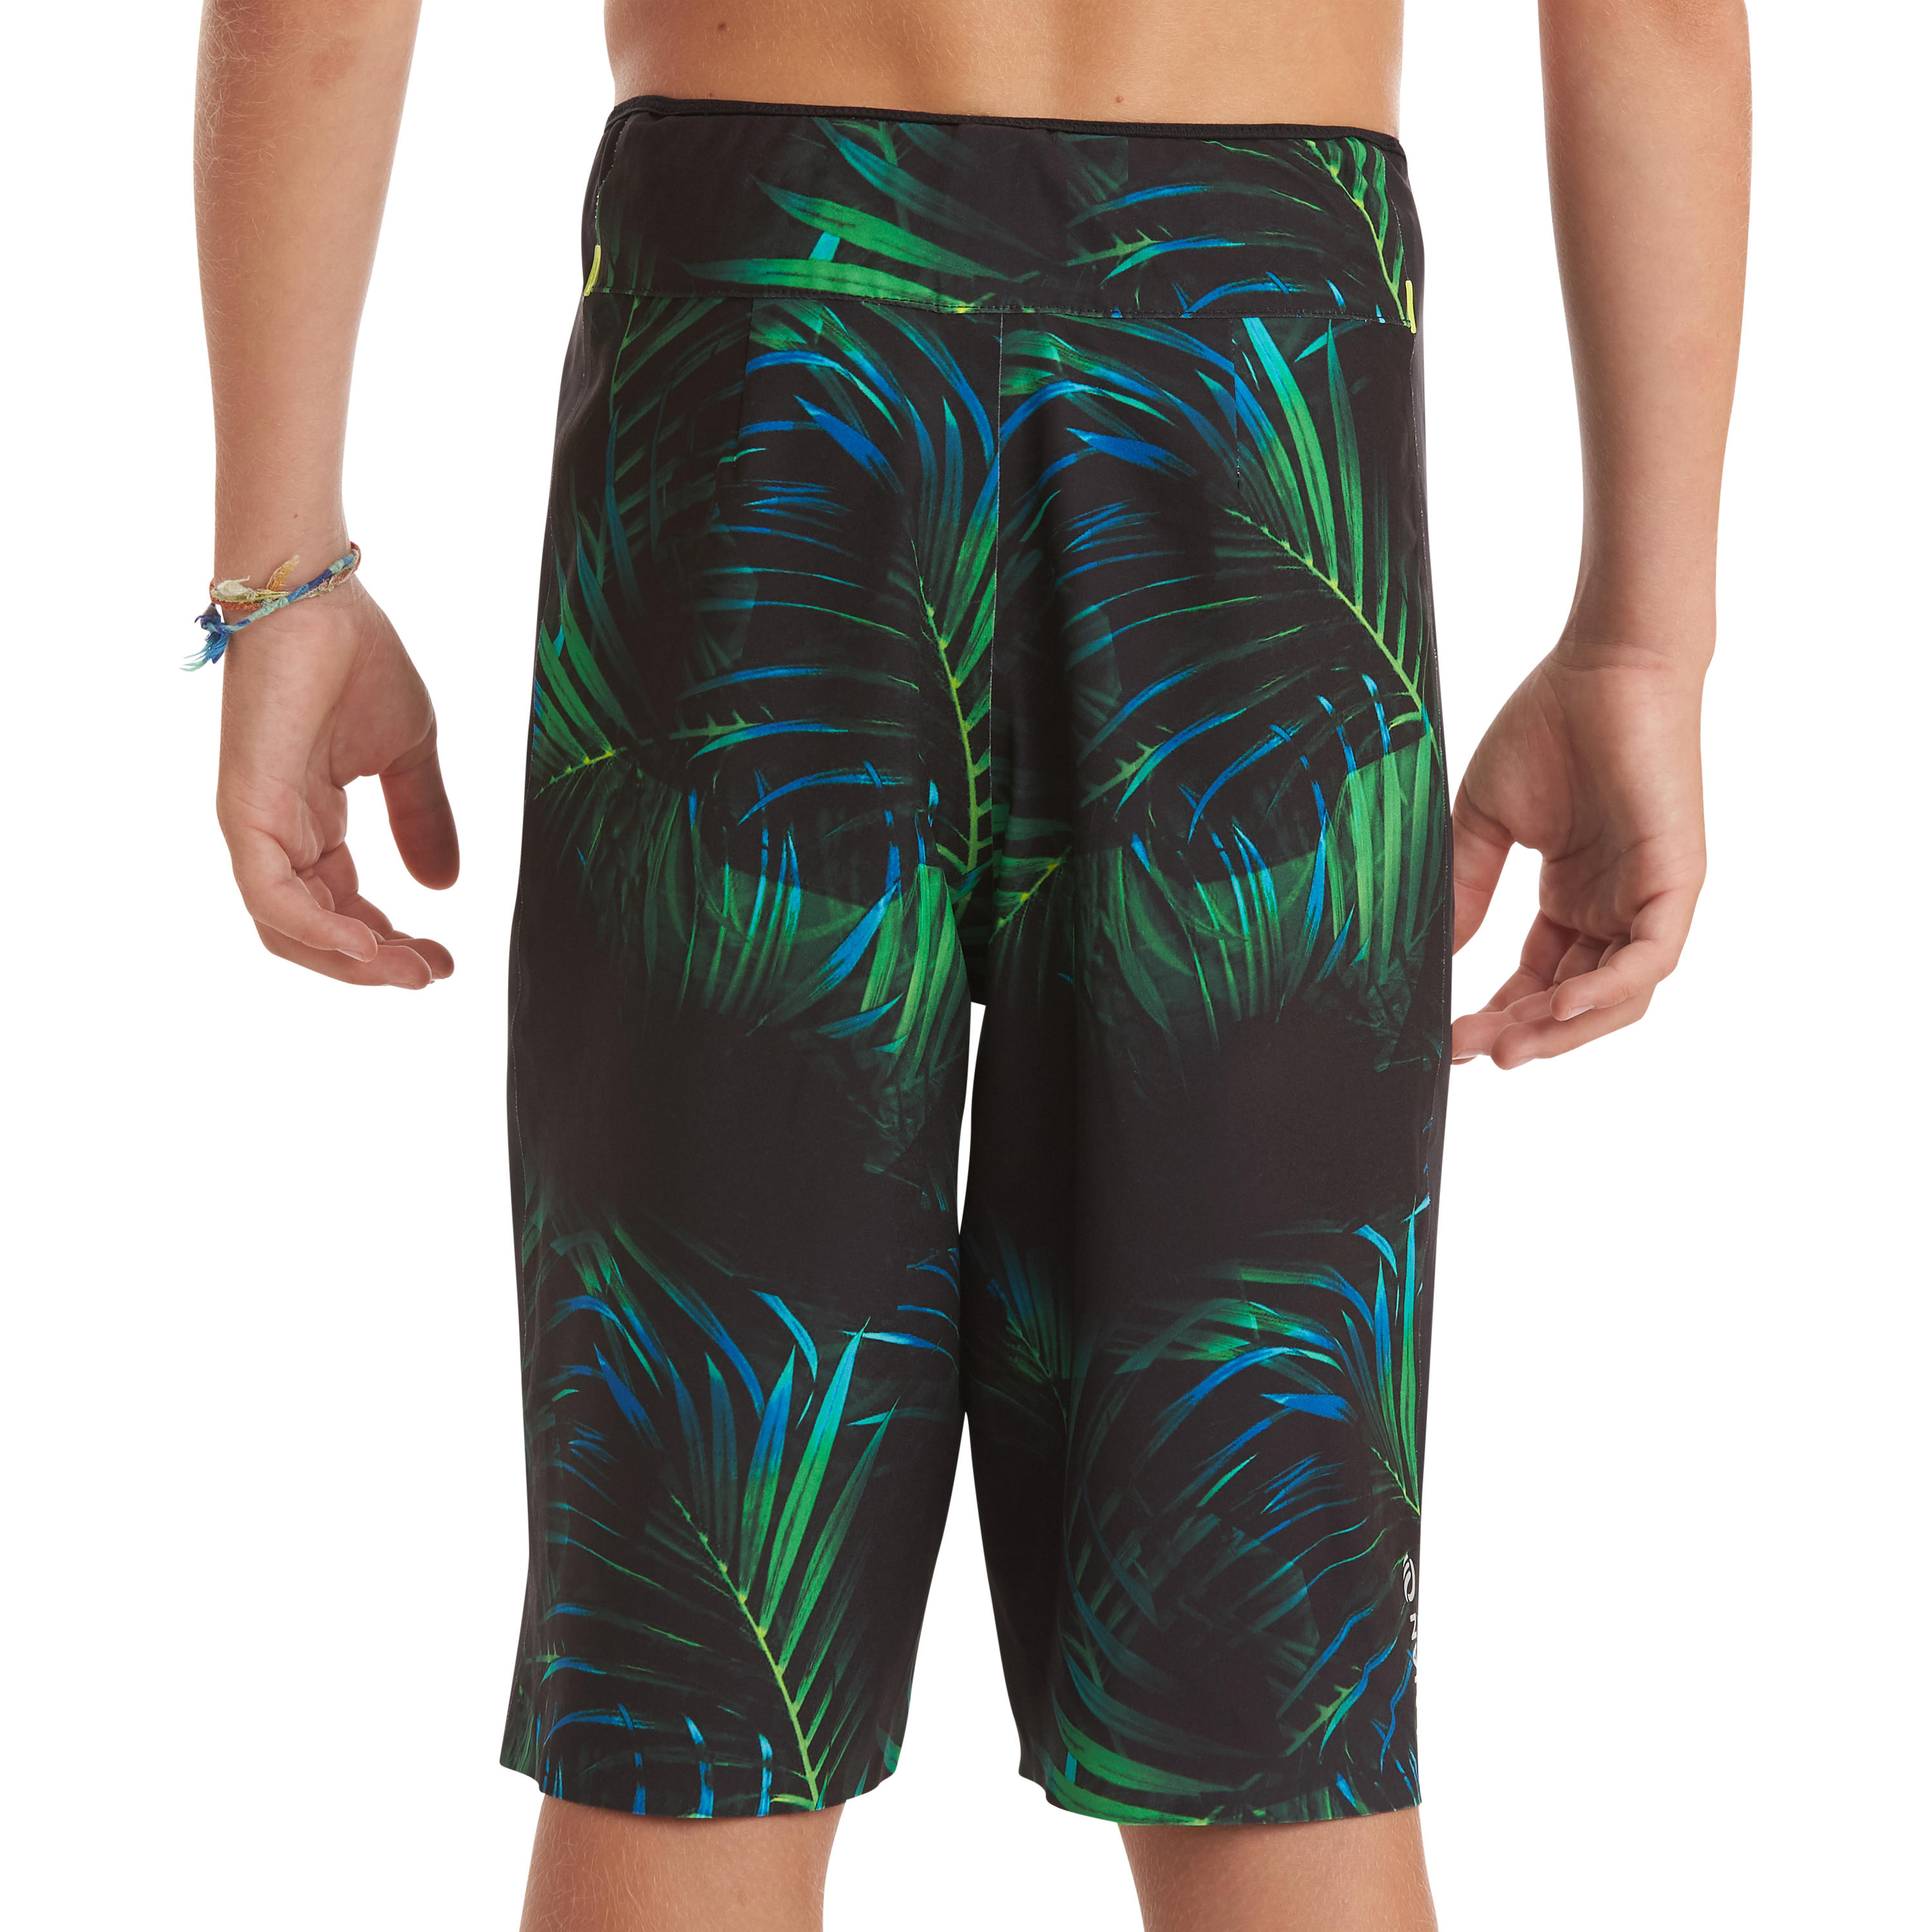 swim shorts/boardshort 900 black green 9/15